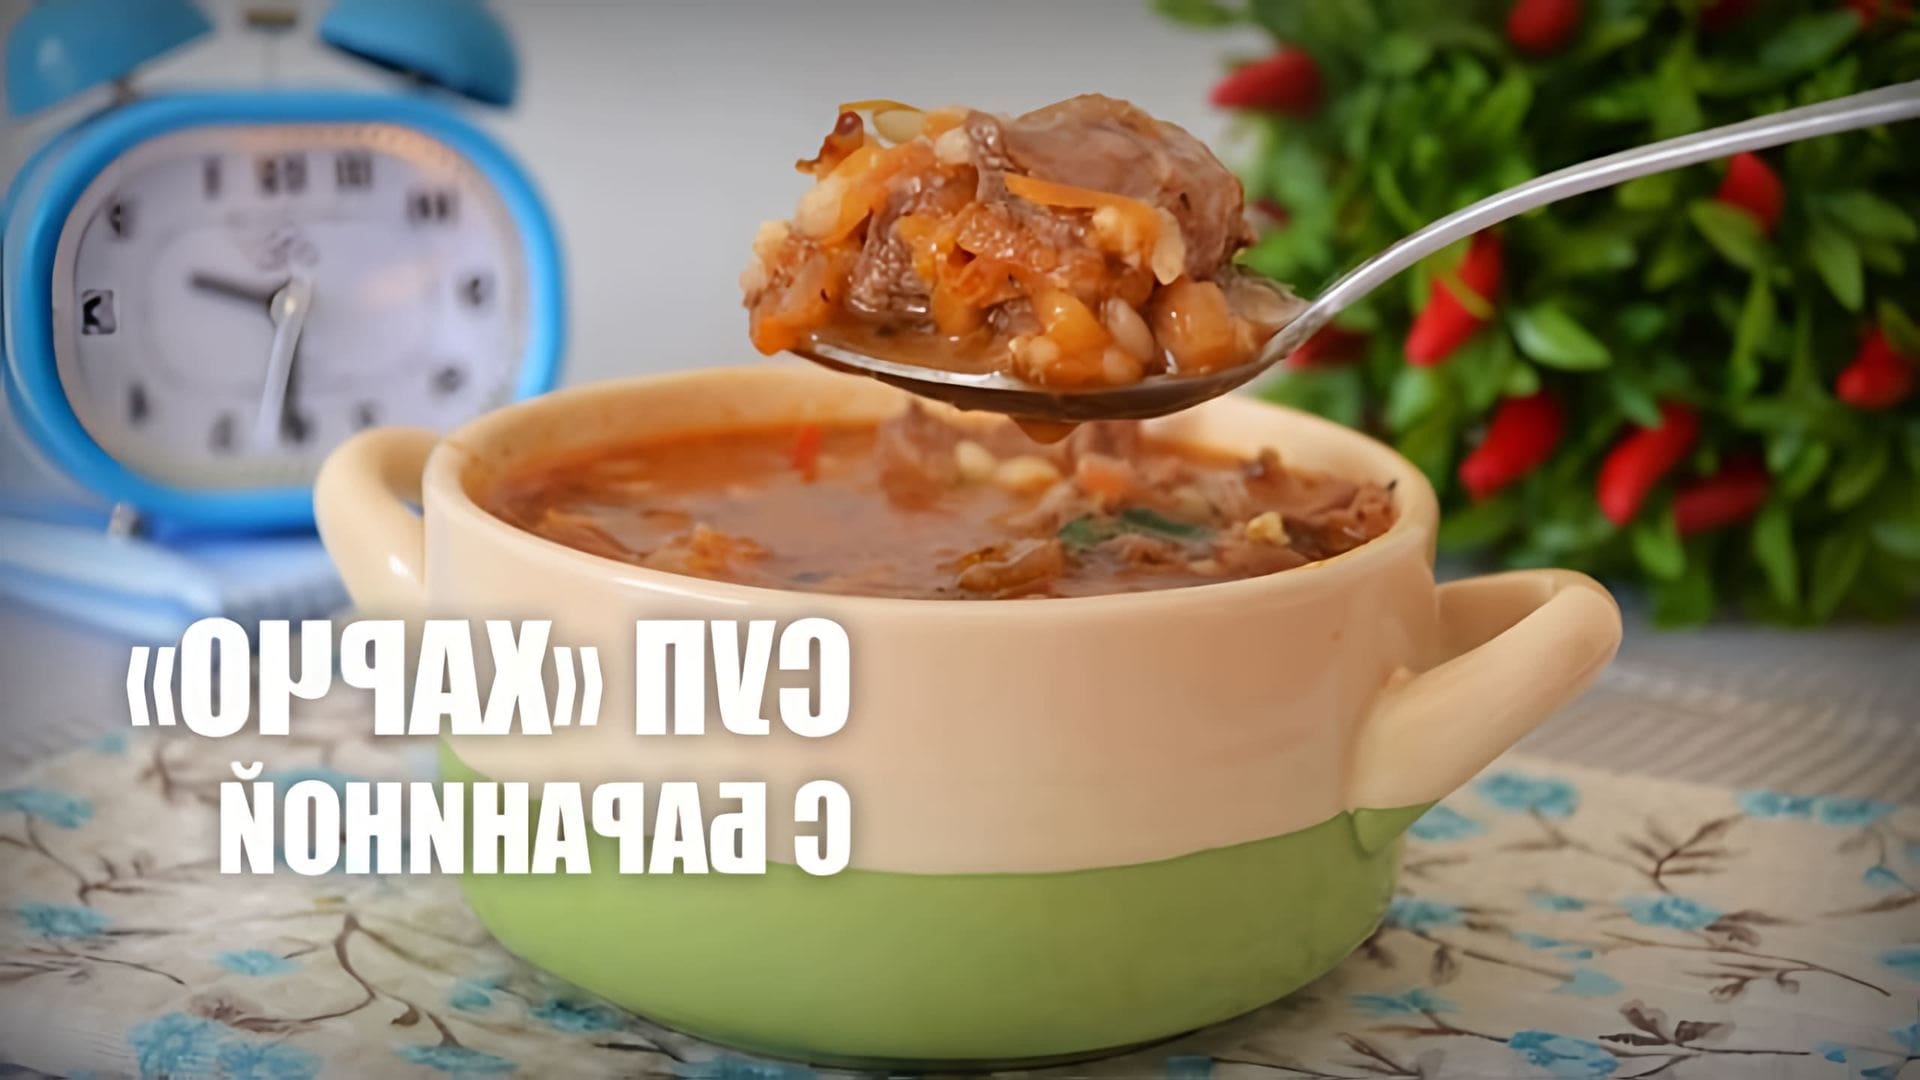 В данном видео представлен рецепт приготовления супа "Харчо" из баранины